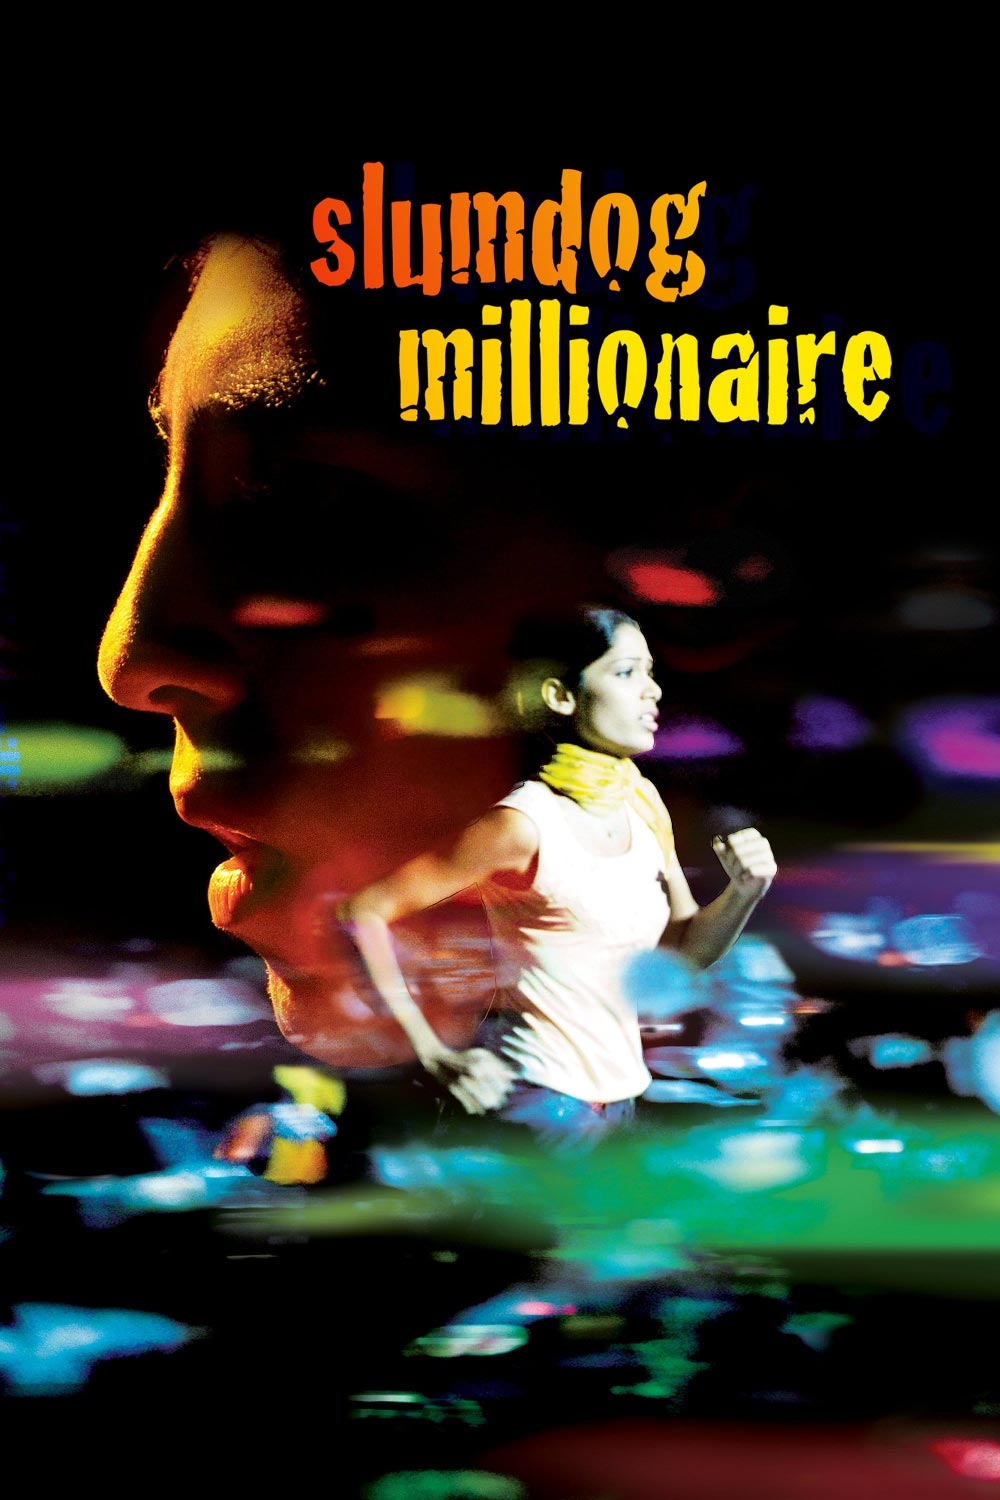 Slumdog Millionaire Poster